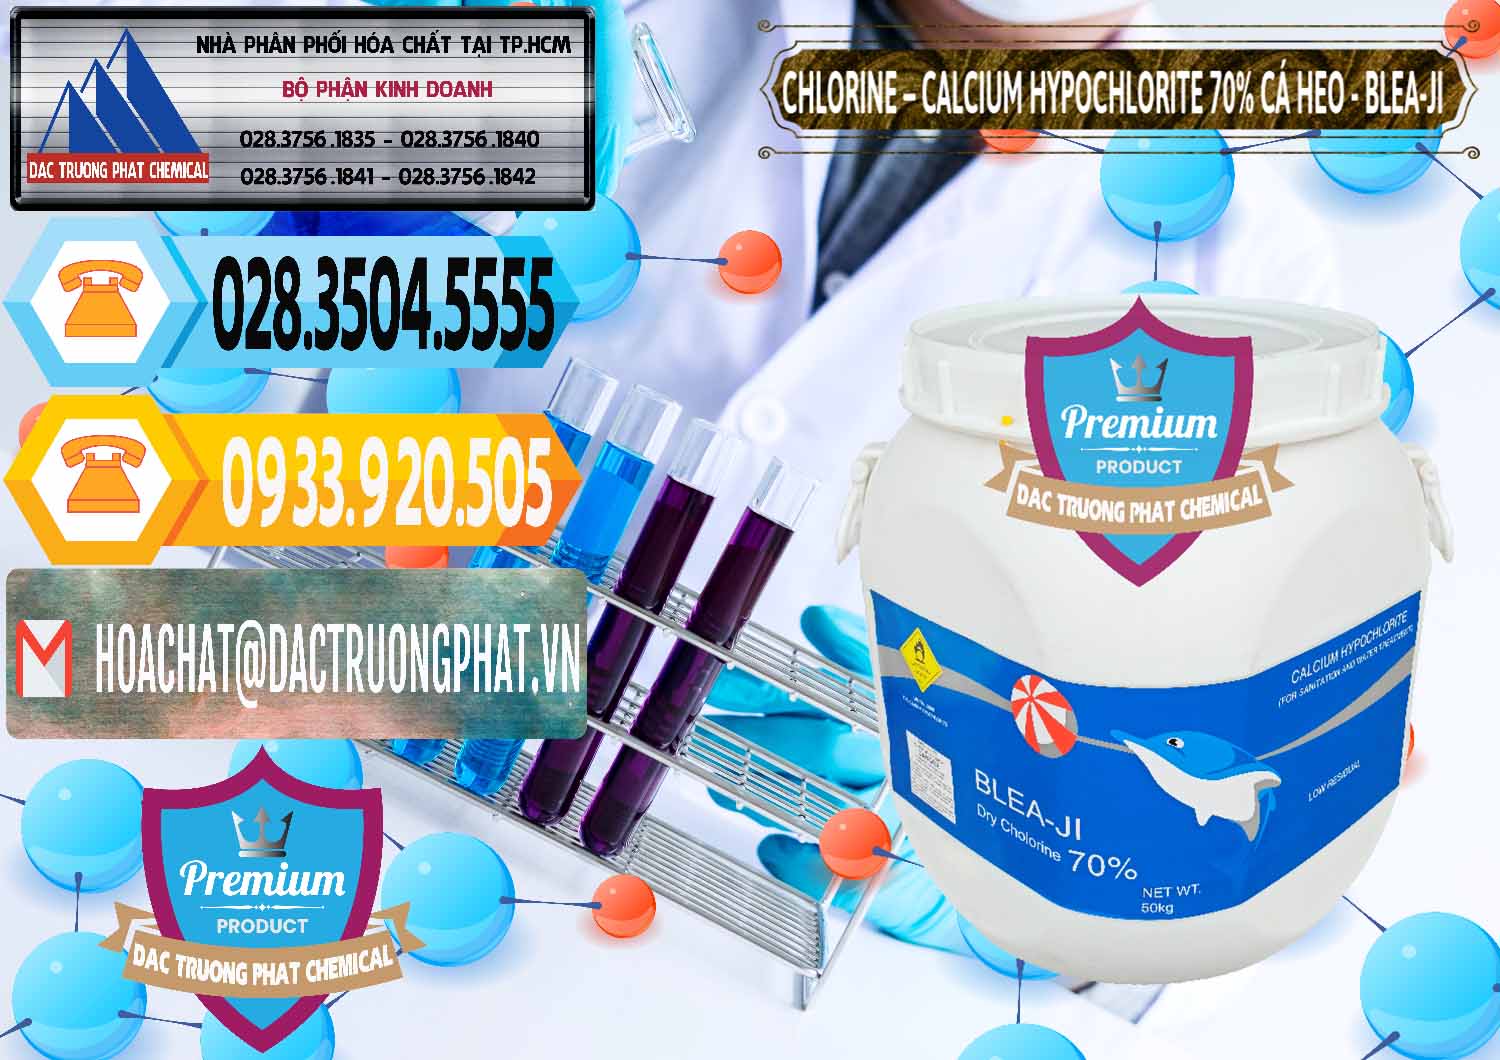 Công ty chuyên bán & cung ứng Clorin - Chlorine Cá Heo 70% Blea-Ji Trung Quốc China - 0056 - Nhà phân phối & bán hóa chất tại TP.HCM - hoachattayrua.net